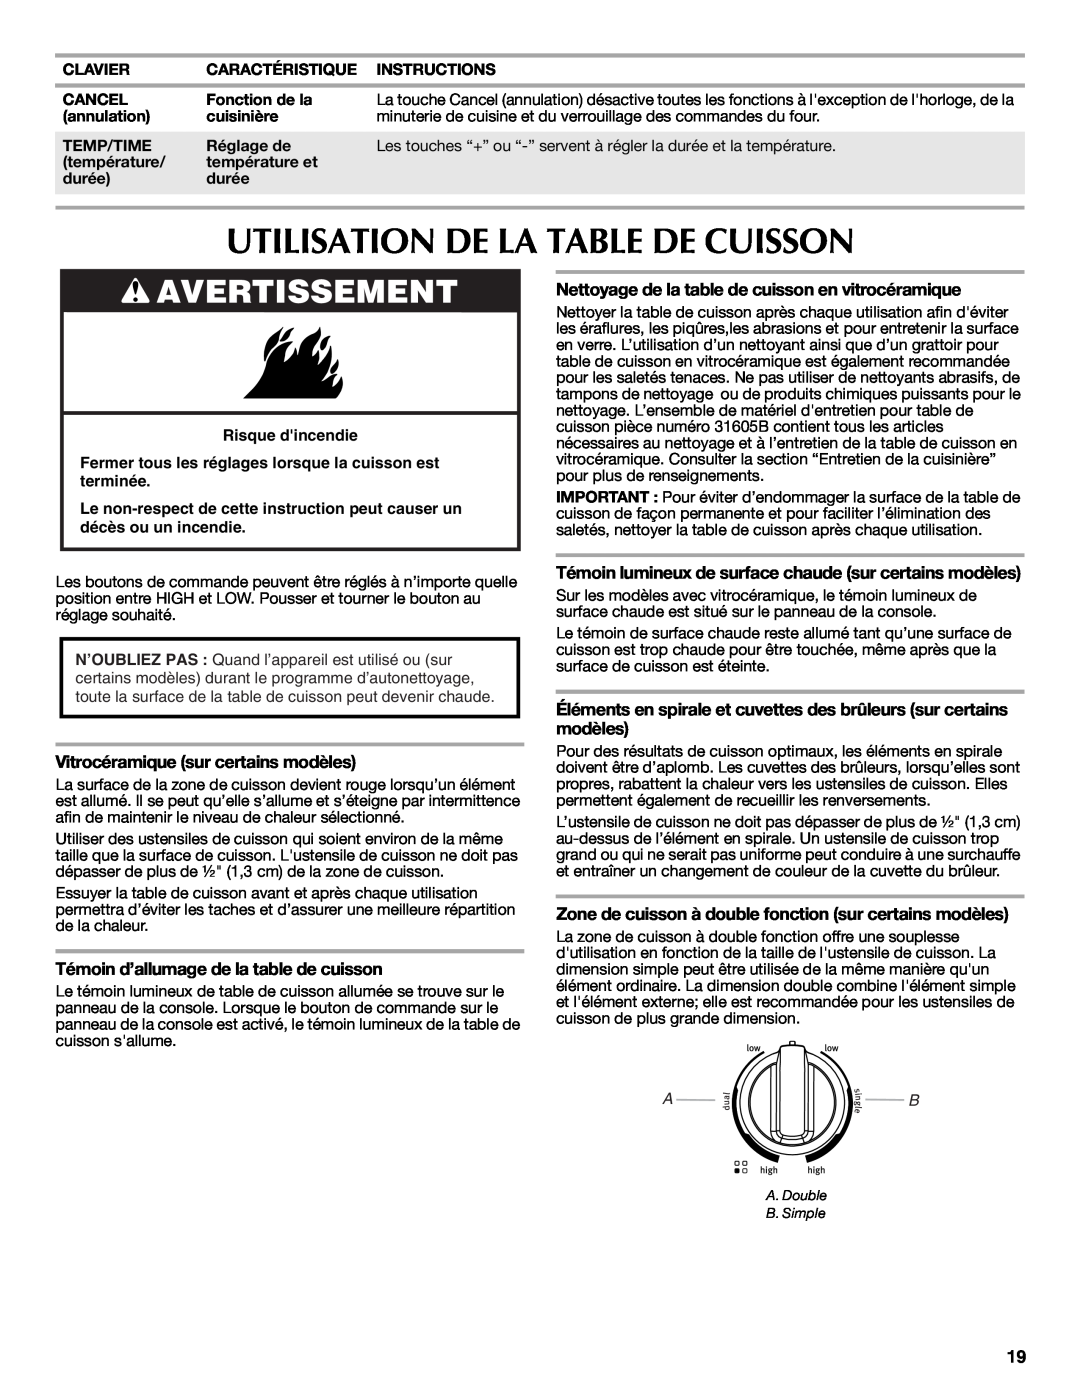 Maytag W10419390A warranty Utilisation De La Table De Cuisson, Vitrocéramique sur certains modèles, Avertissement 